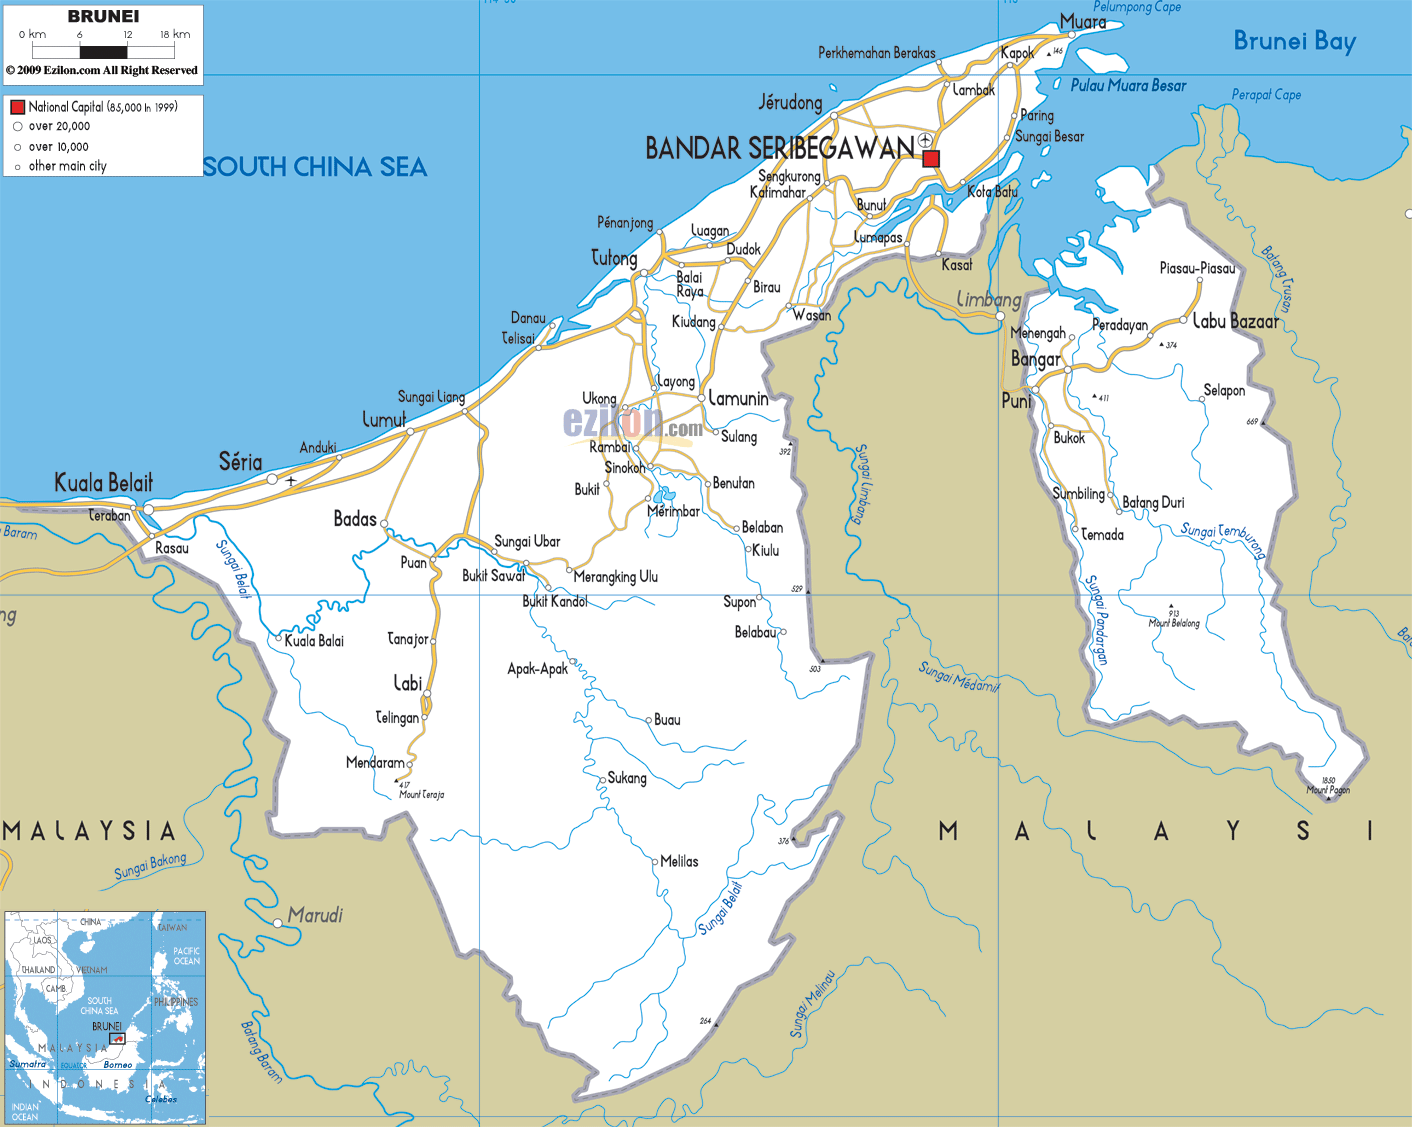 [Update] Bản đồ đất nước Brunei (Brunei Map) phóng to năm 2022 13